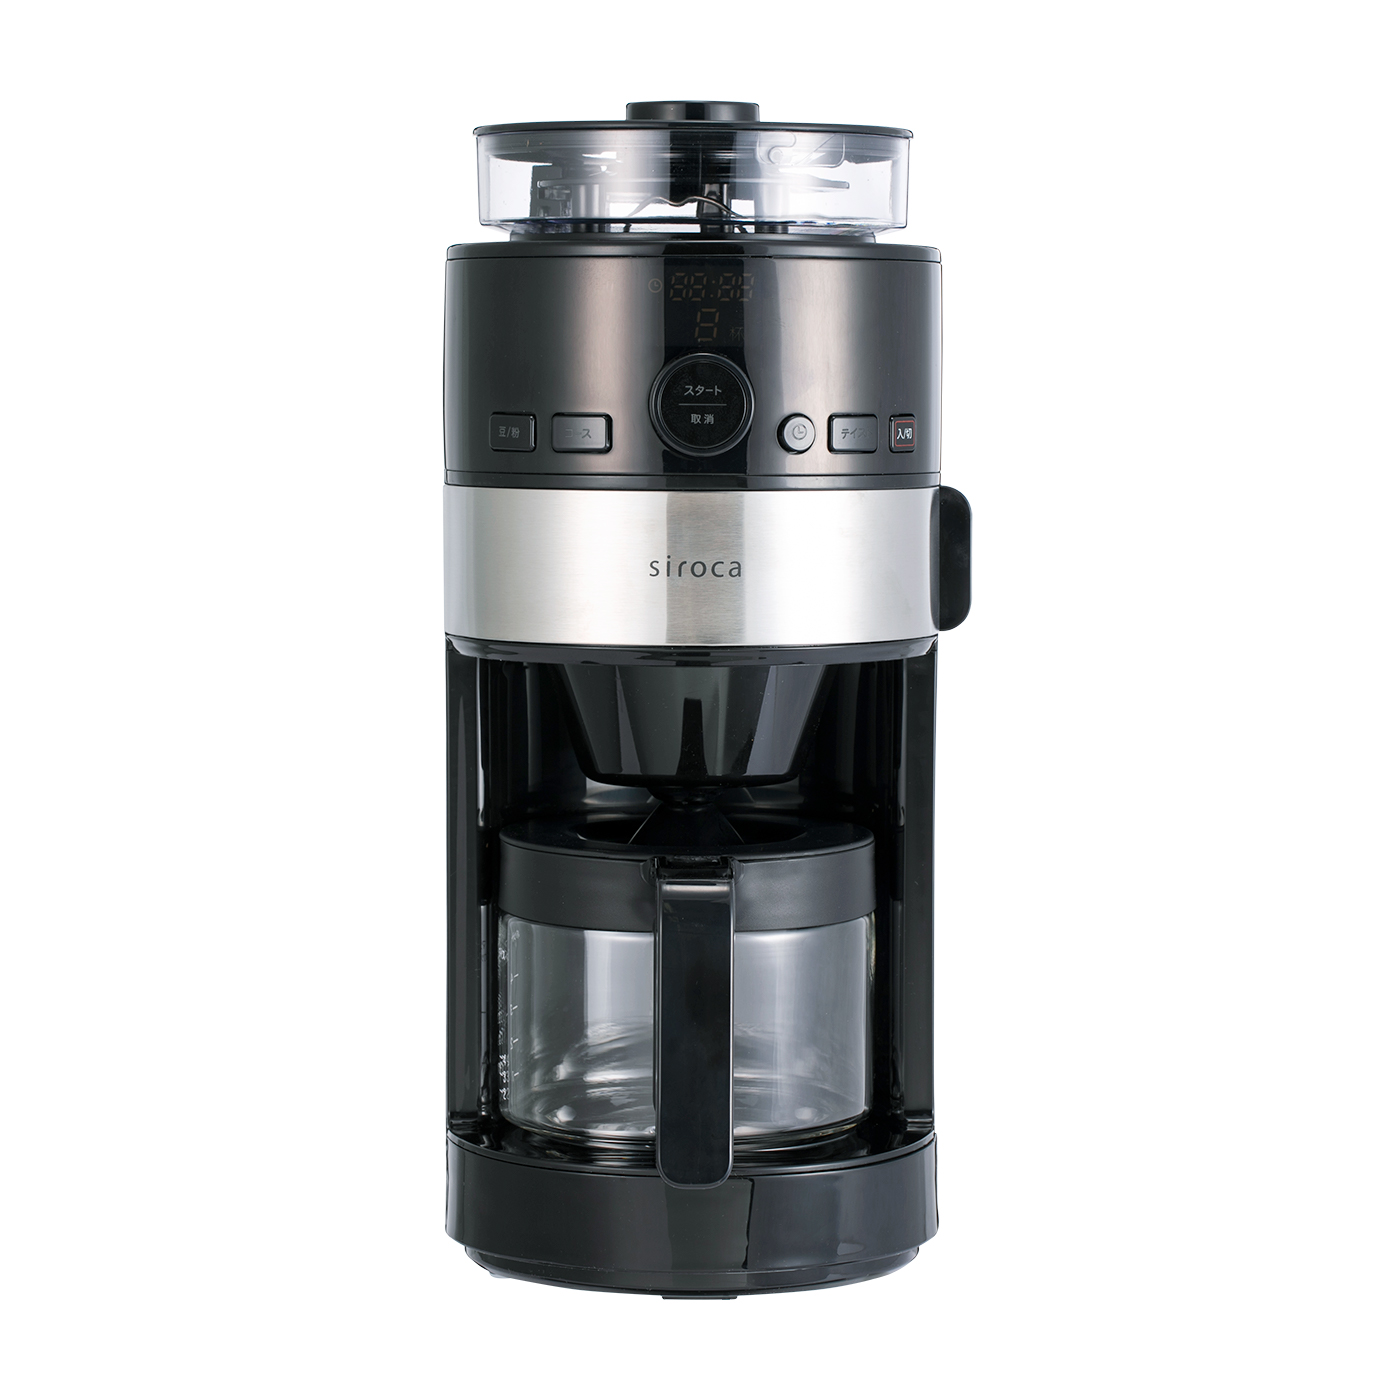 シロカ コーン式全自動コーヒーメーカー SC-C111 - コーヒーメーカー